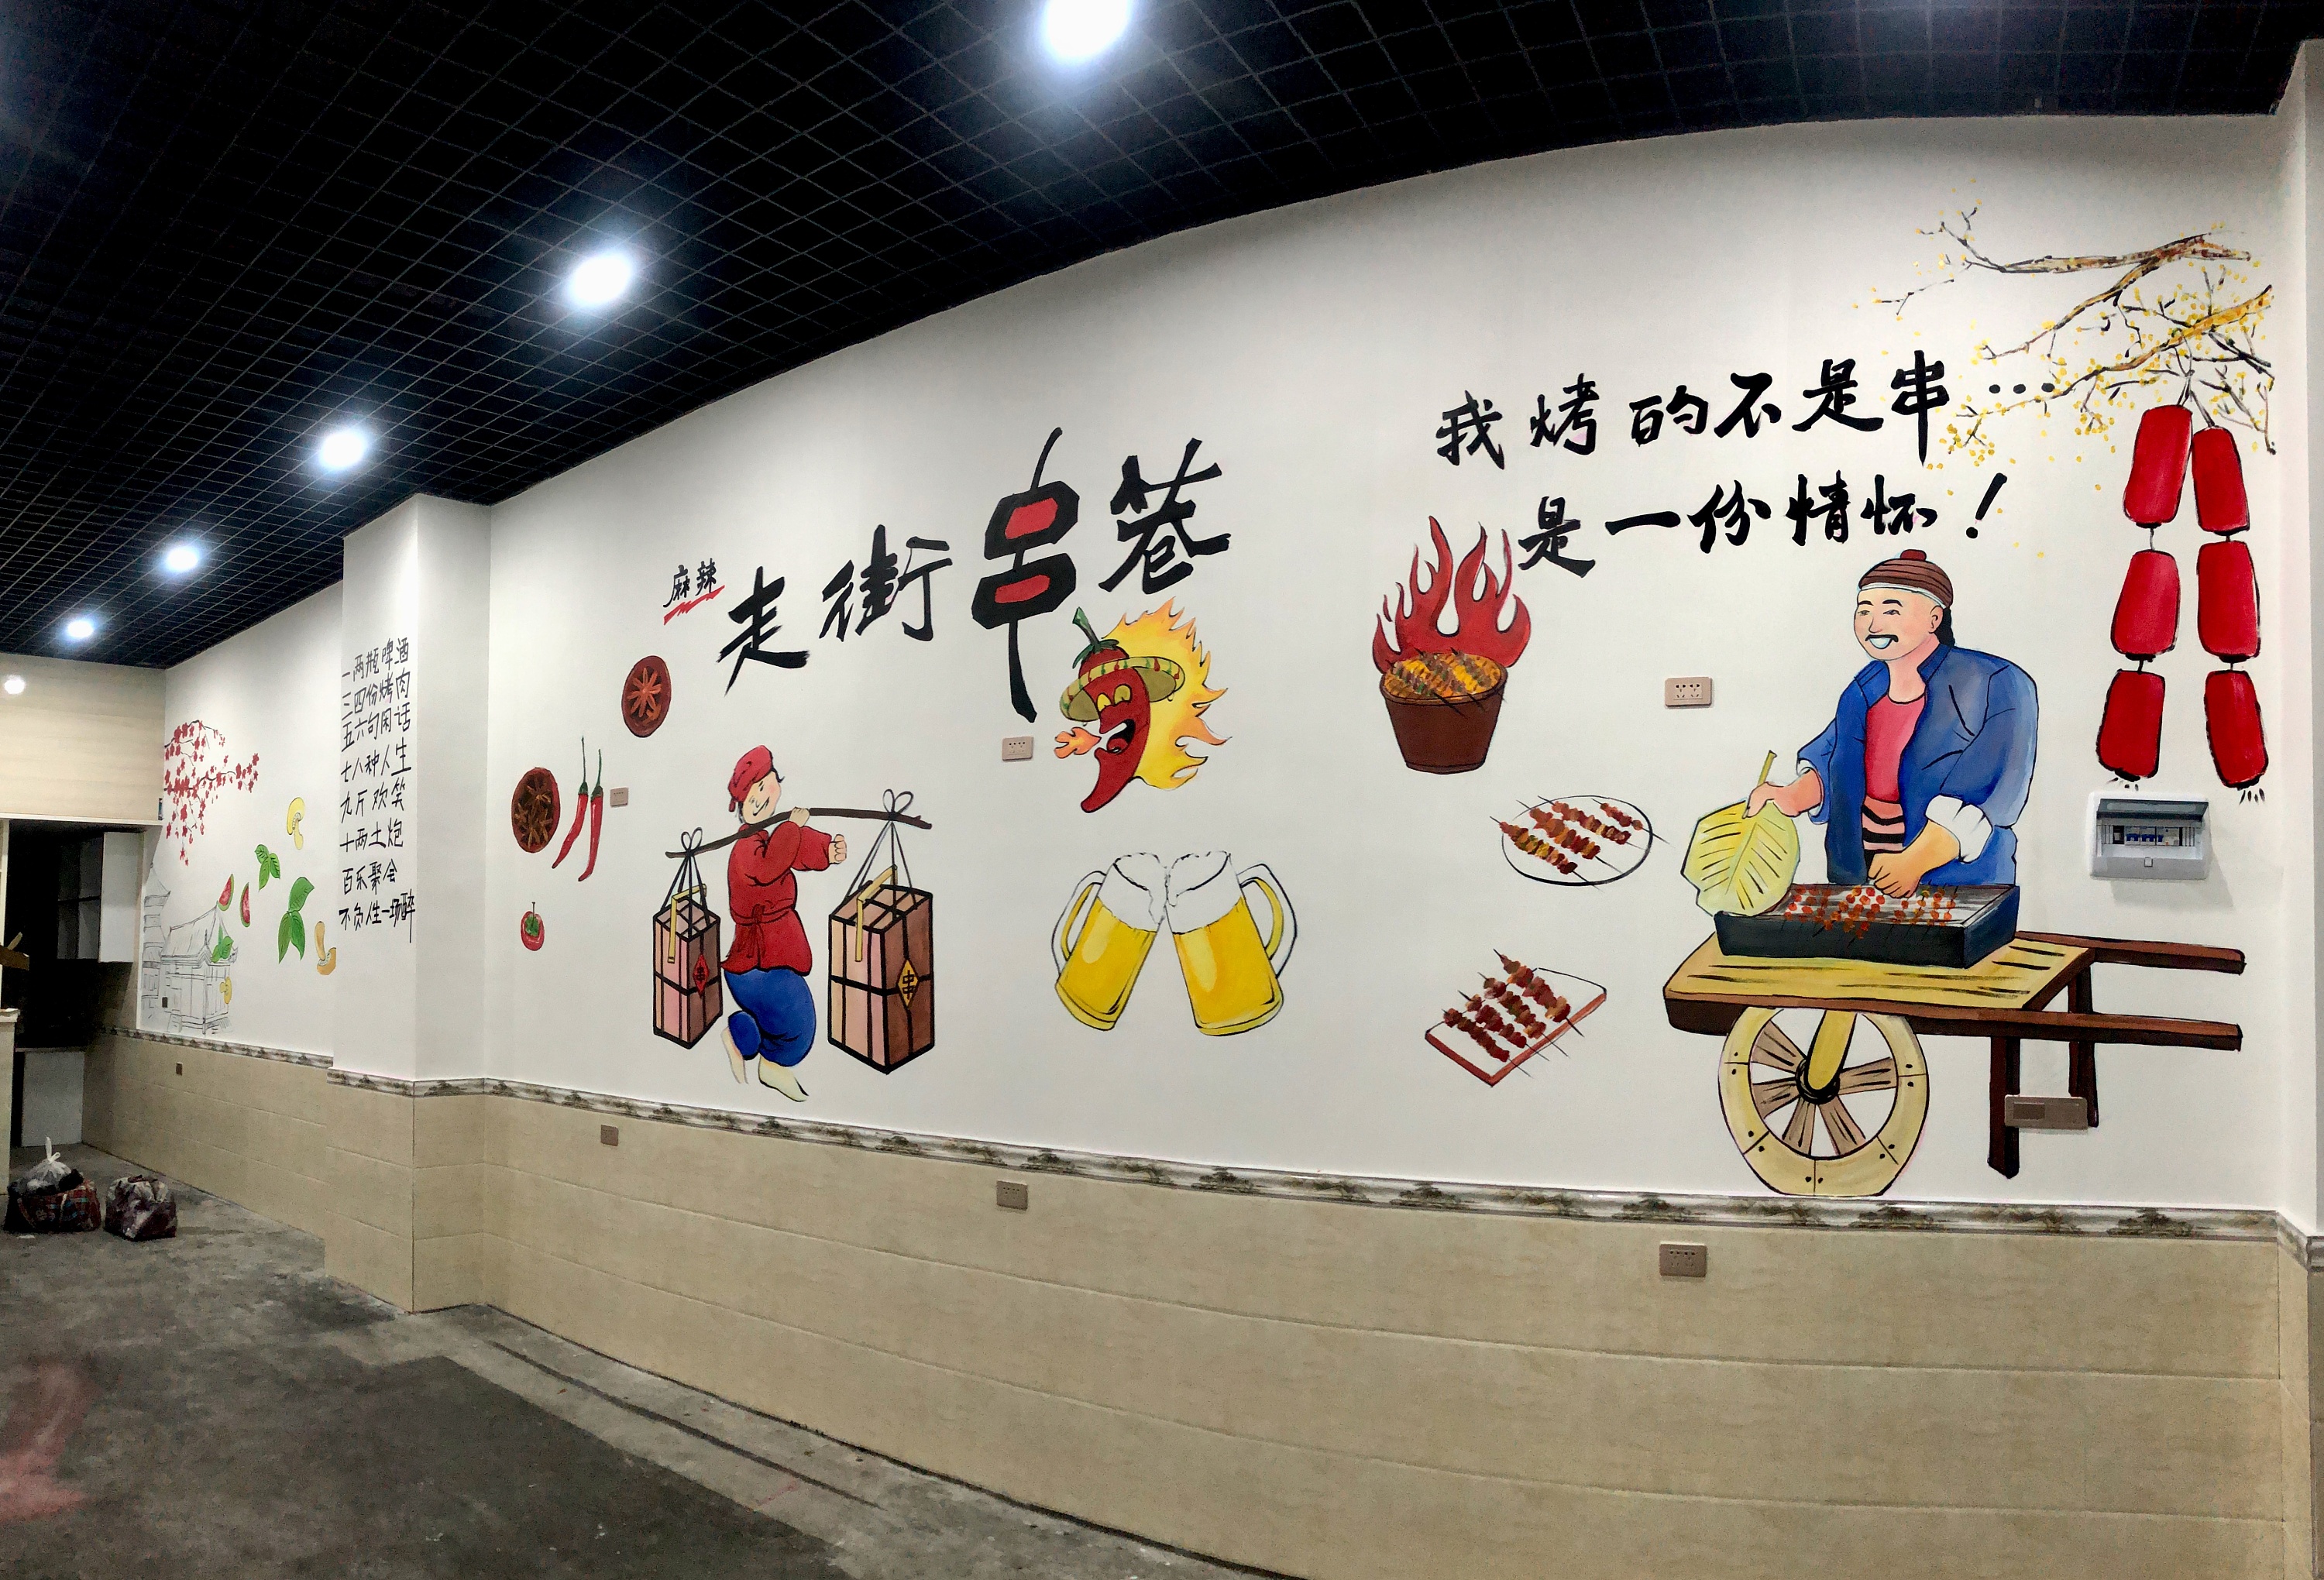 竹签烤肉店墙绘壁画手绘